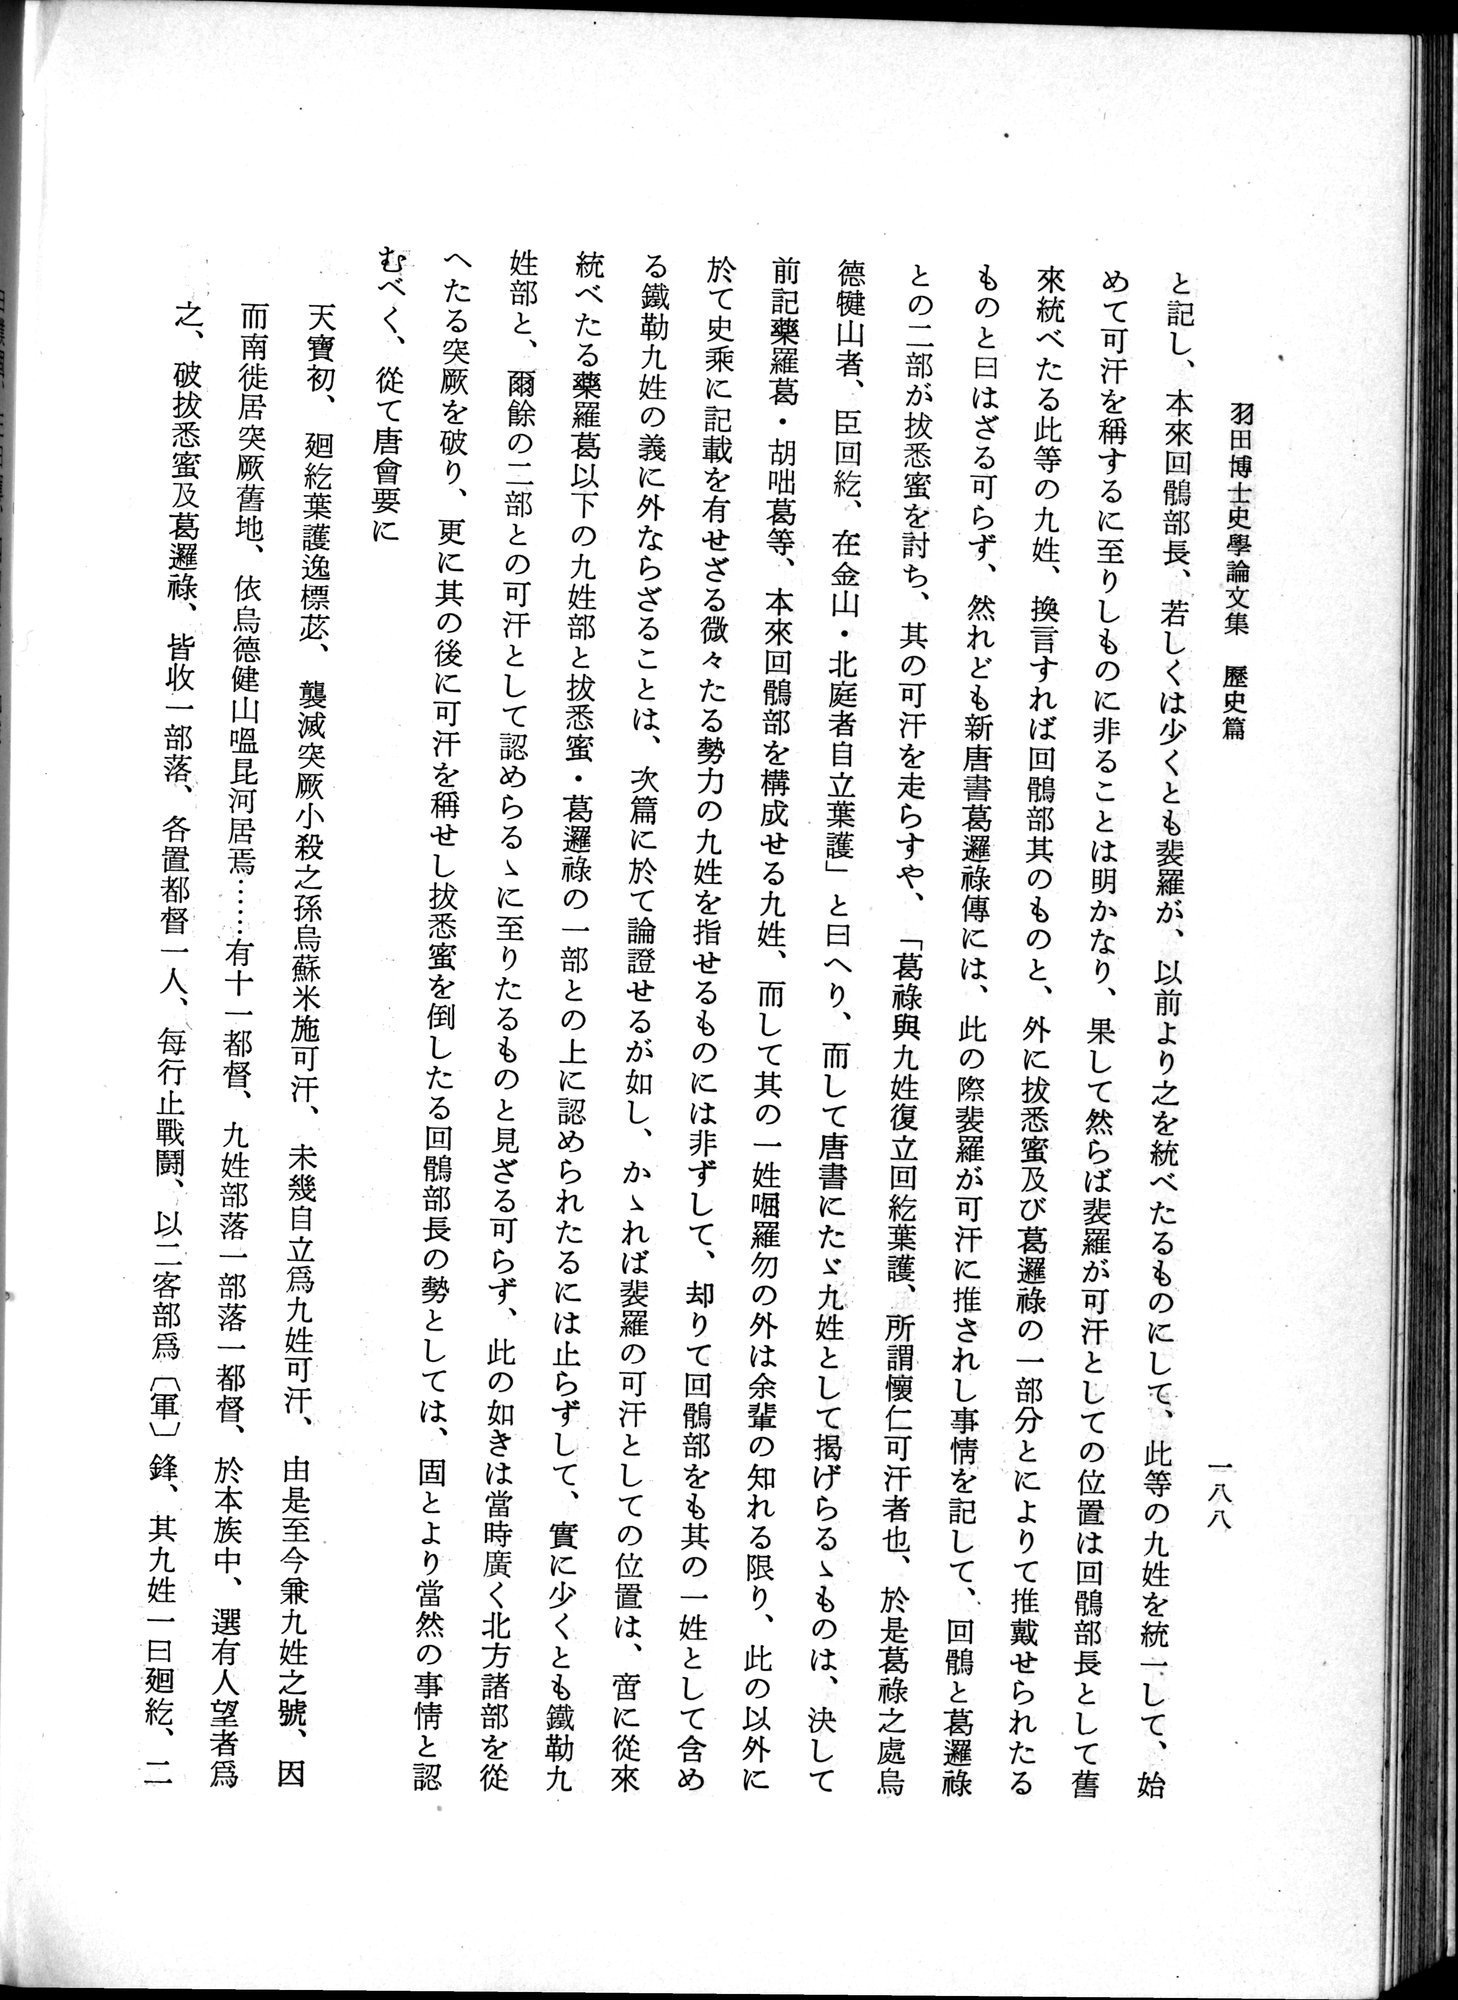 羽田博士史学論文集 : vol.1 / Page 226 (Grayscale High Resolution Image)